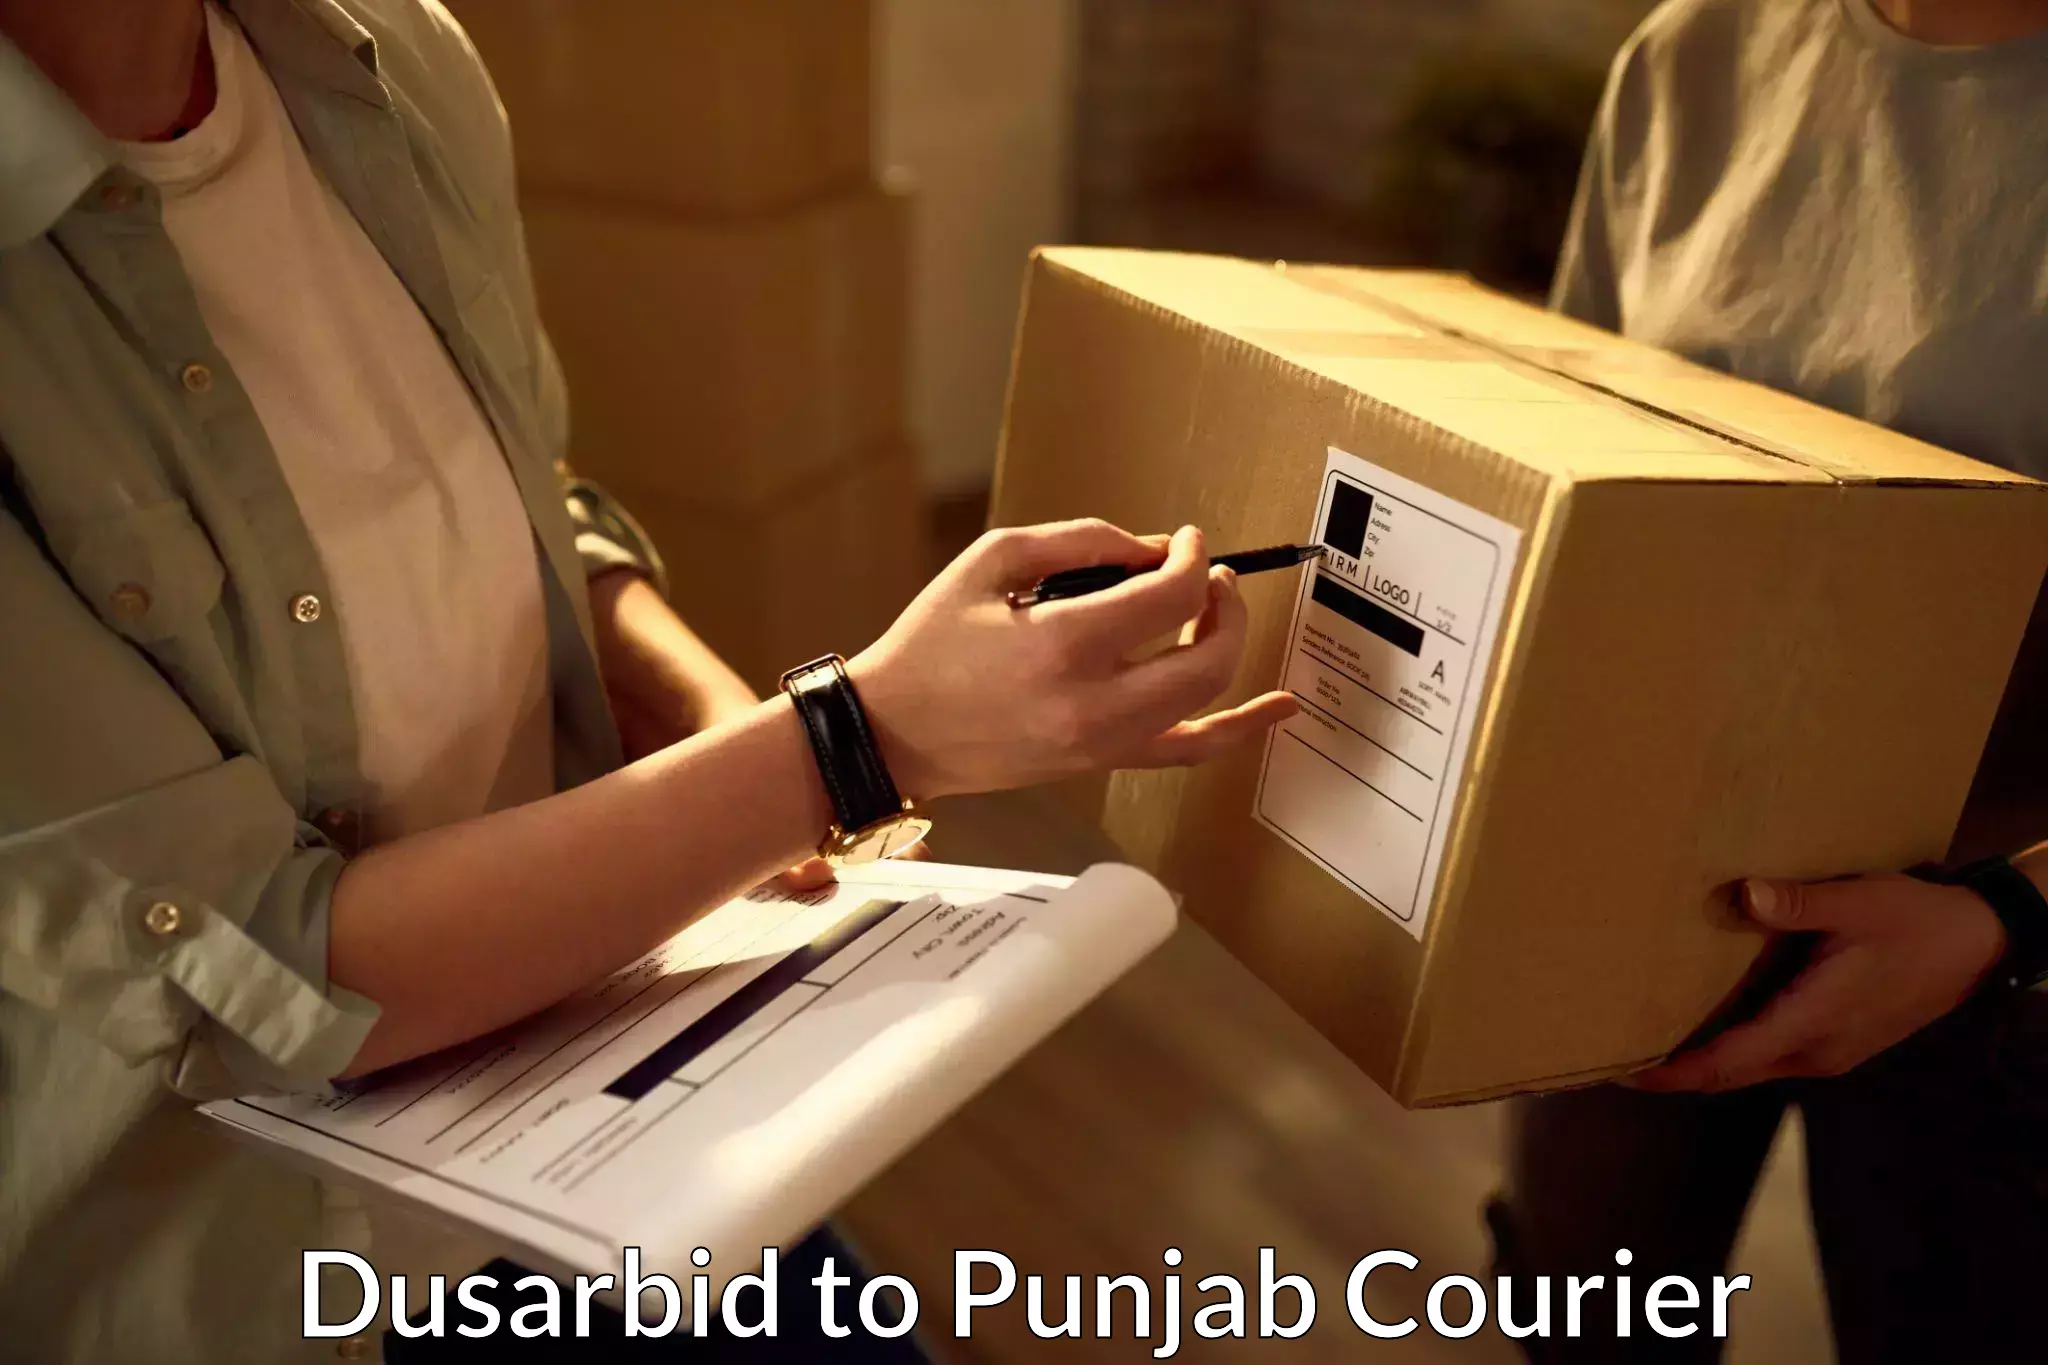 Courier service comparison Dusarbid to Punjab